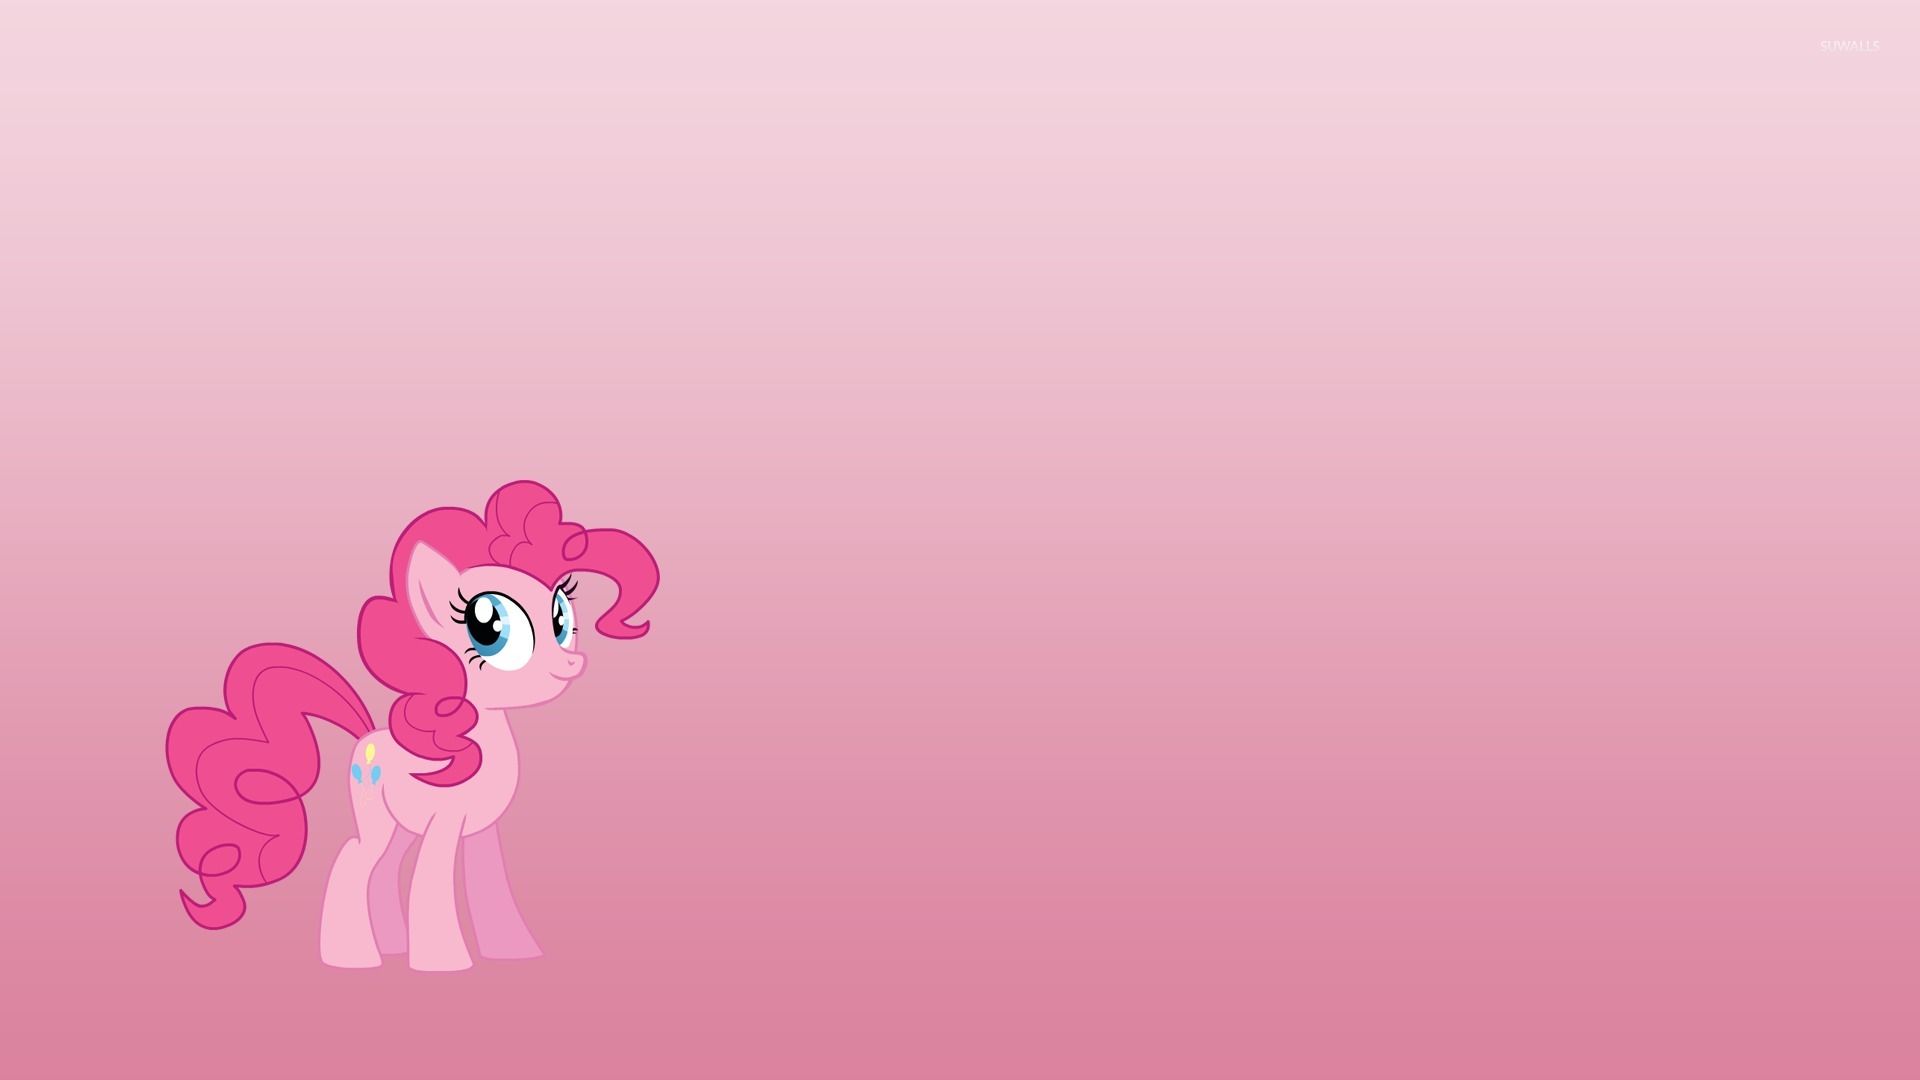 Cute Pinkie Pie from My Little Pony wallpaper wallpaper